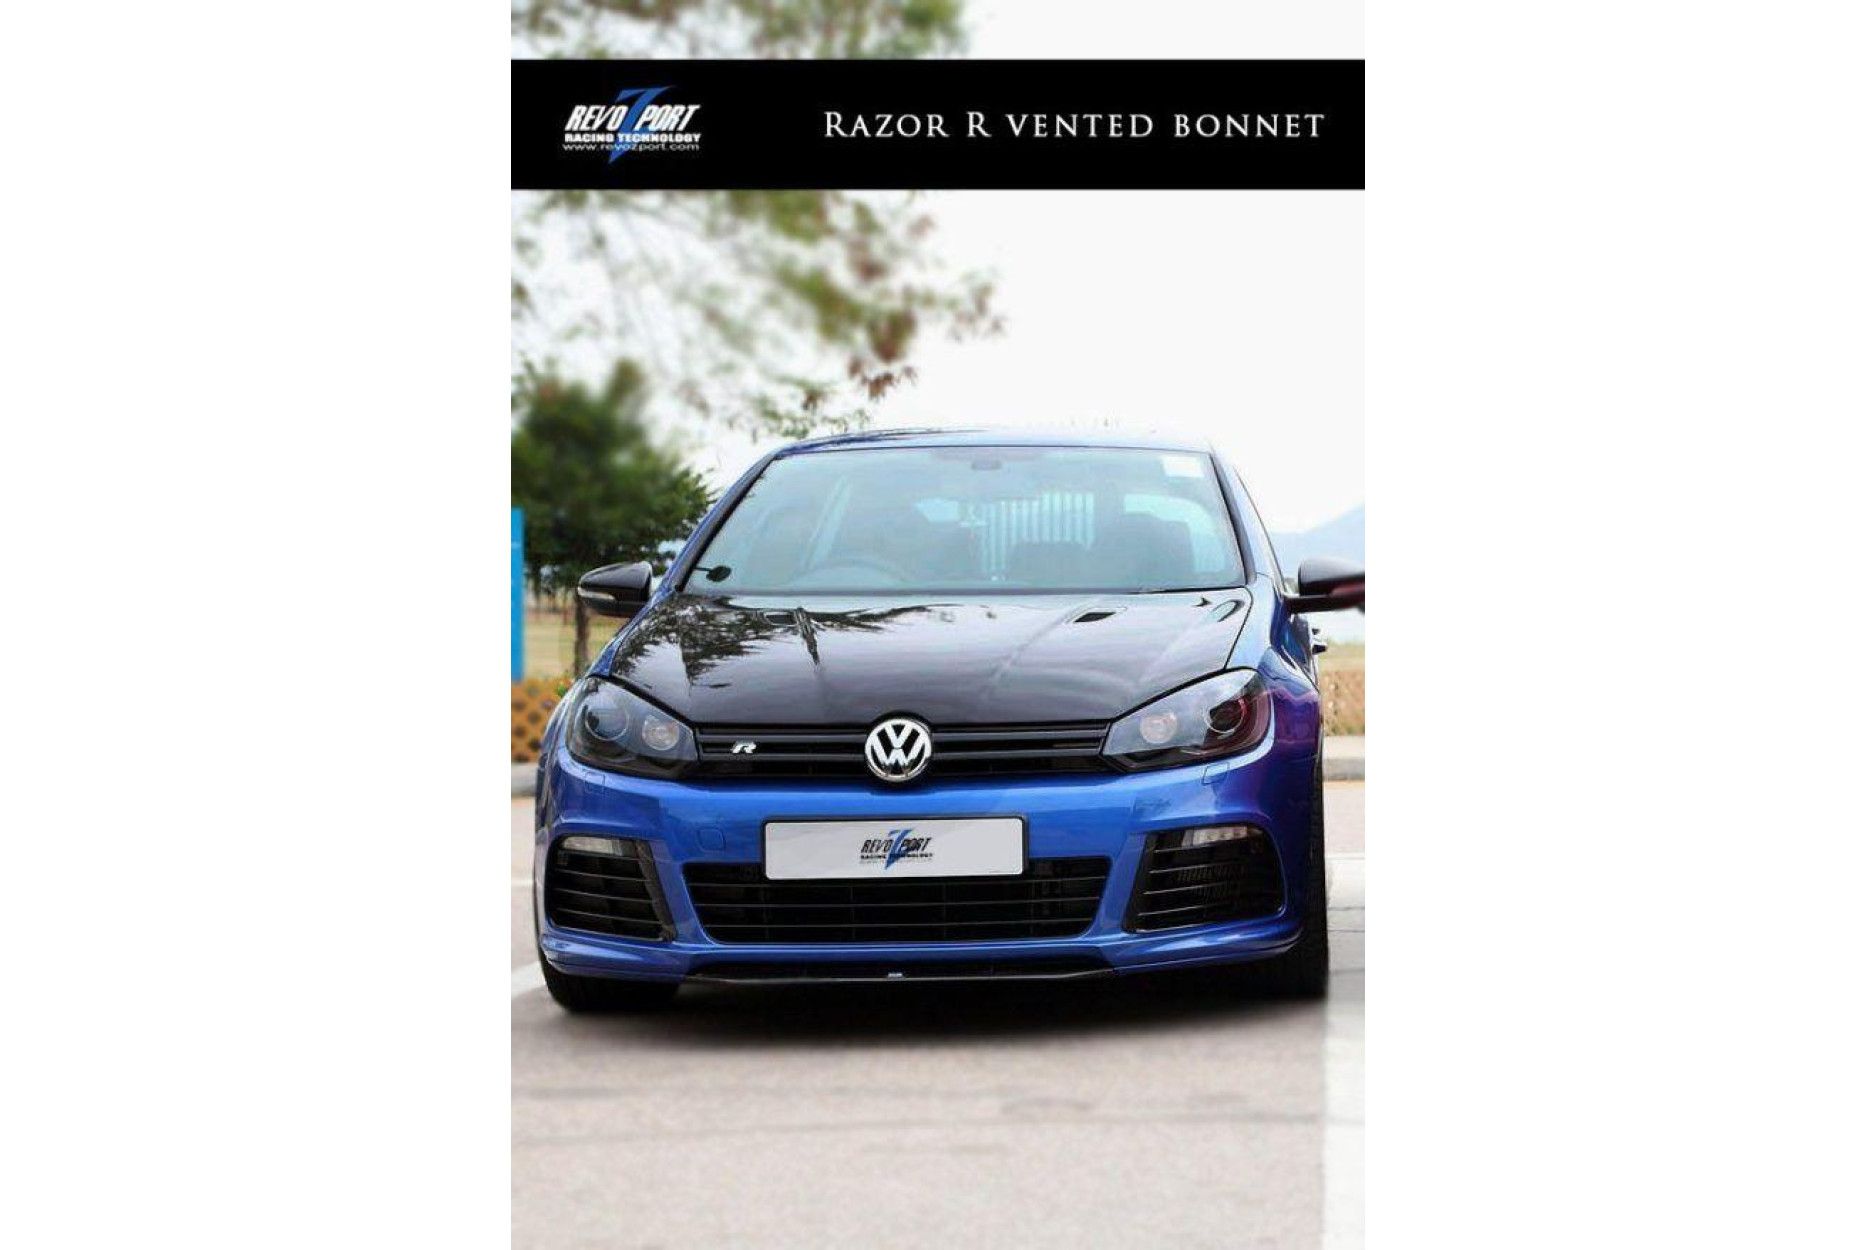 RevoZport Carbon hood for Volkswagen Golf MK6|Golf 6 R "Razor" with vents (7) 